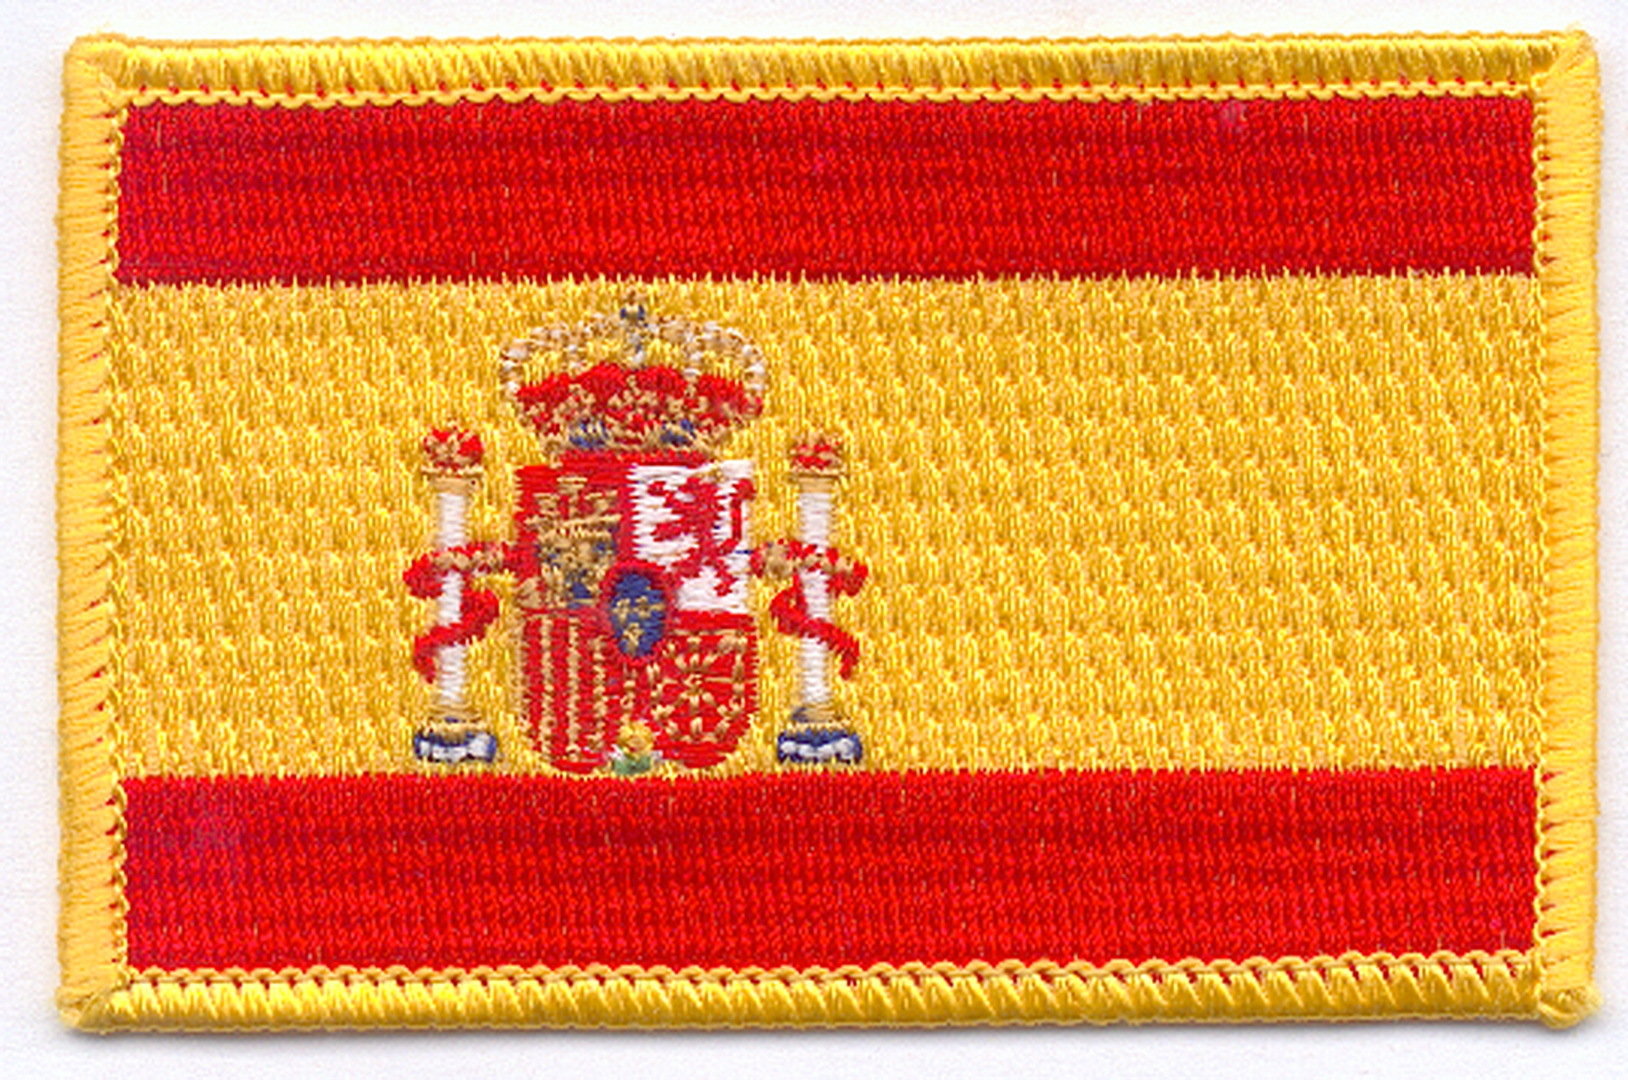 Parche Bord. Bandera España 